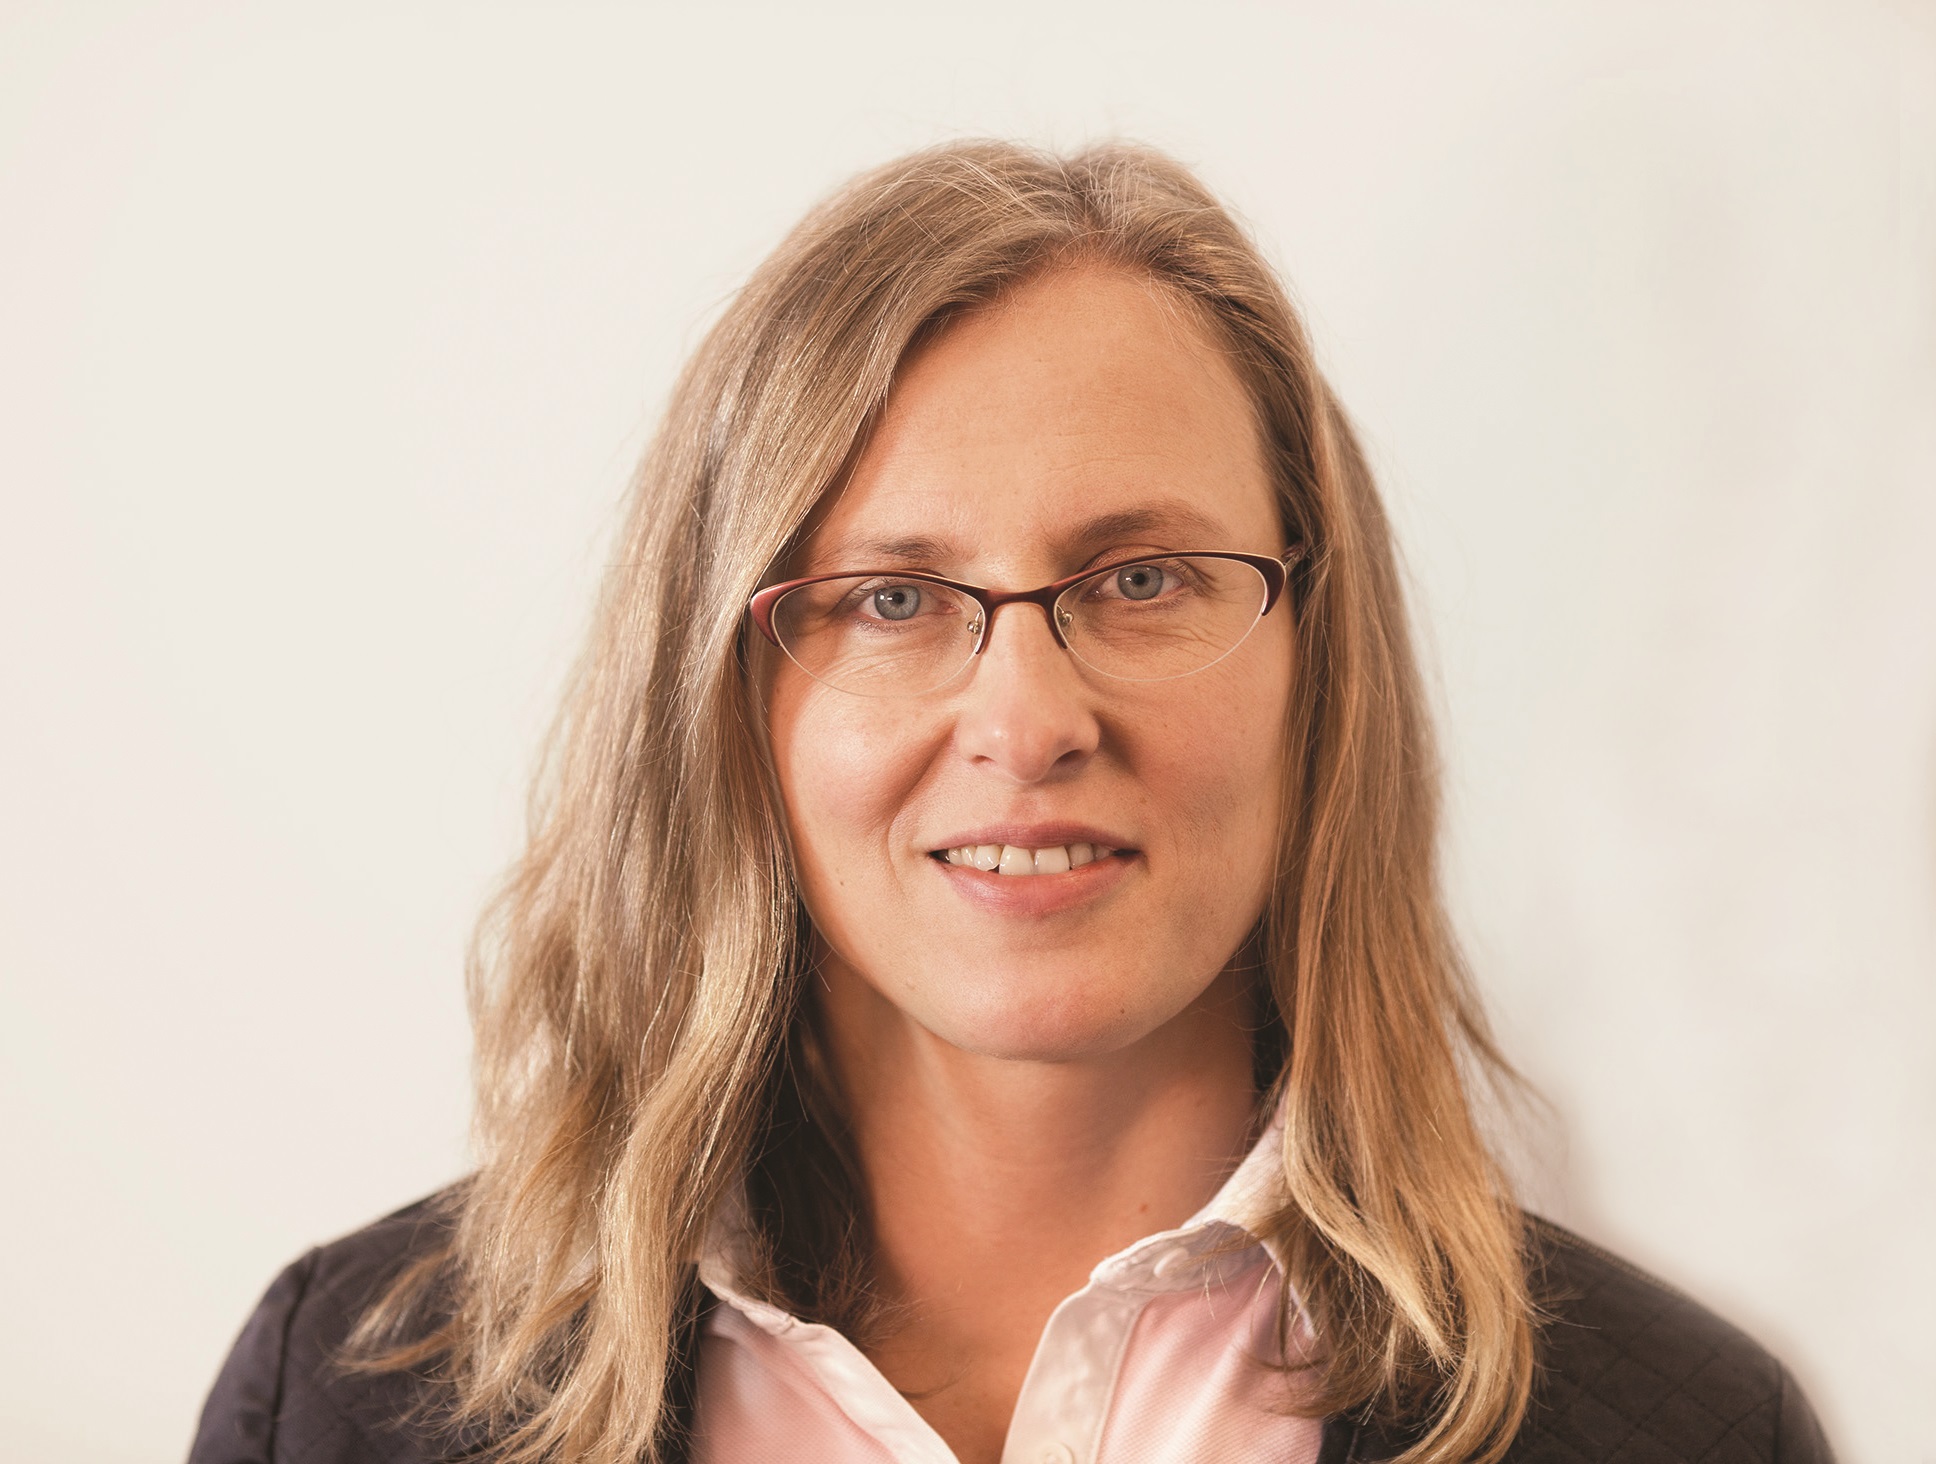 Marta Szwakopf, Dyrektor Departamentu Marketingu Rynku Biznesowego T-Mobile